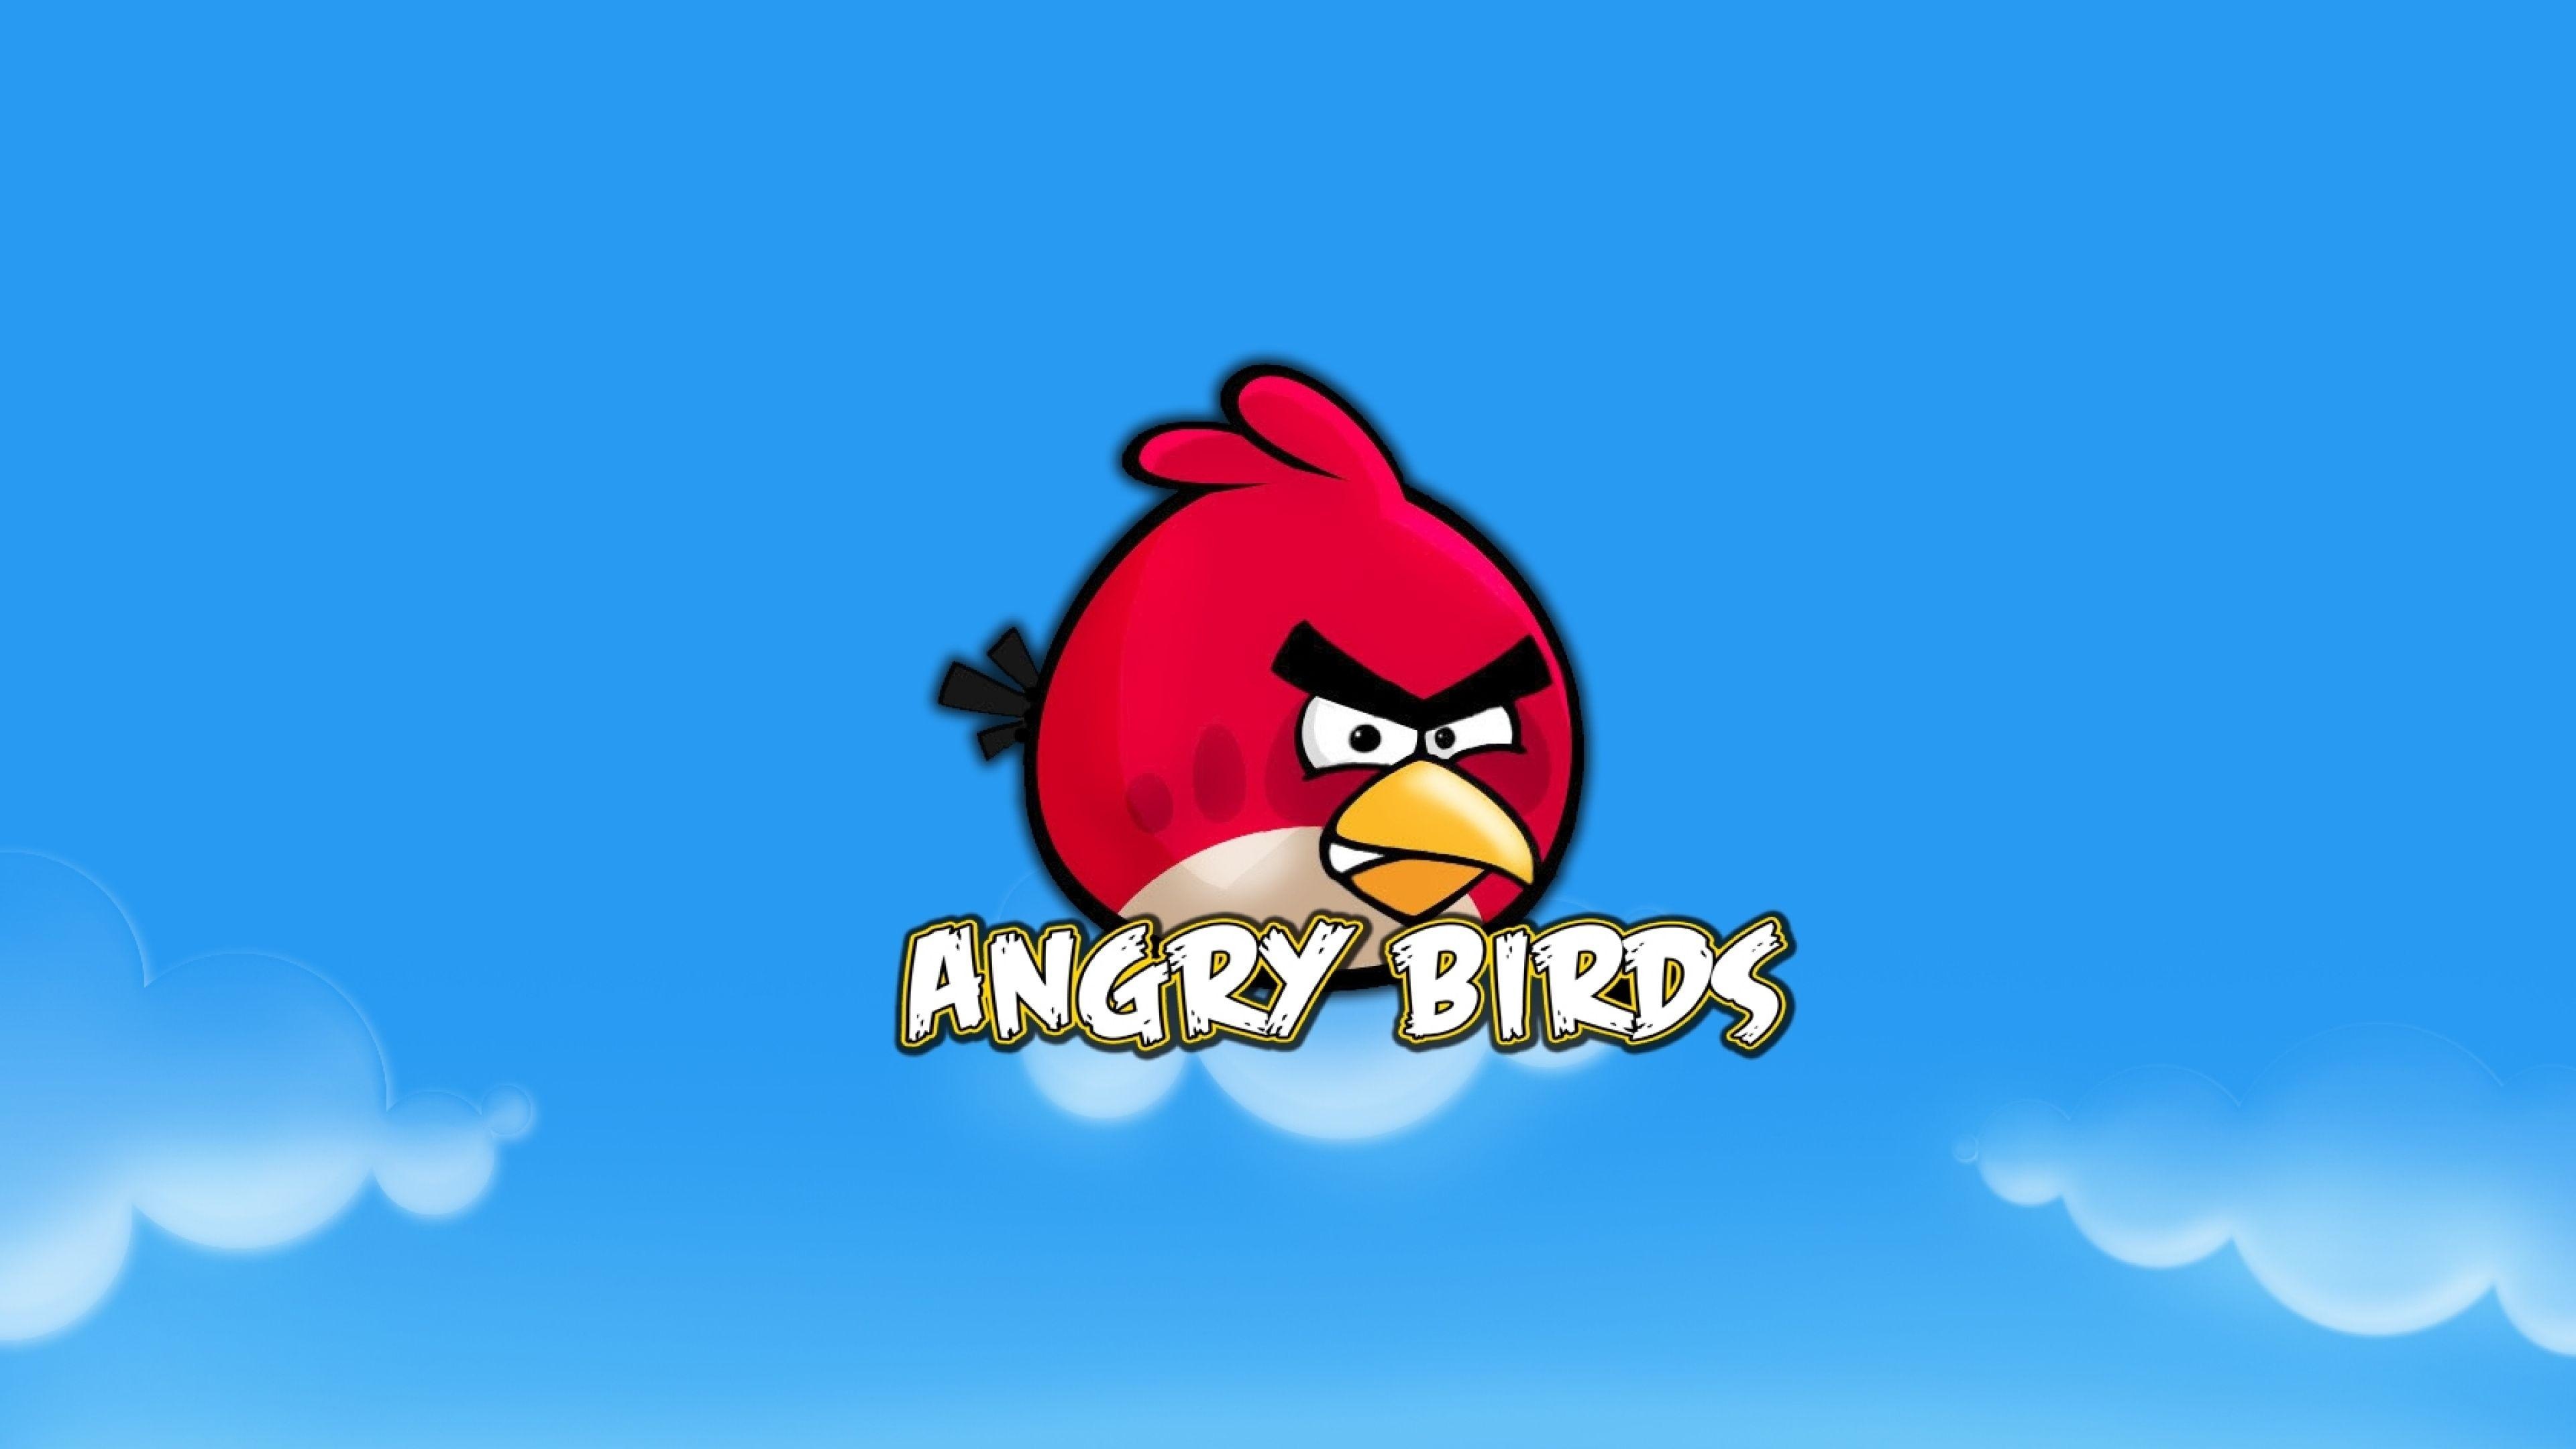 Birds 1 часть. Злые птички. Птички Энгри бердз. Angry Birds (игра). Angry Birds птицы.